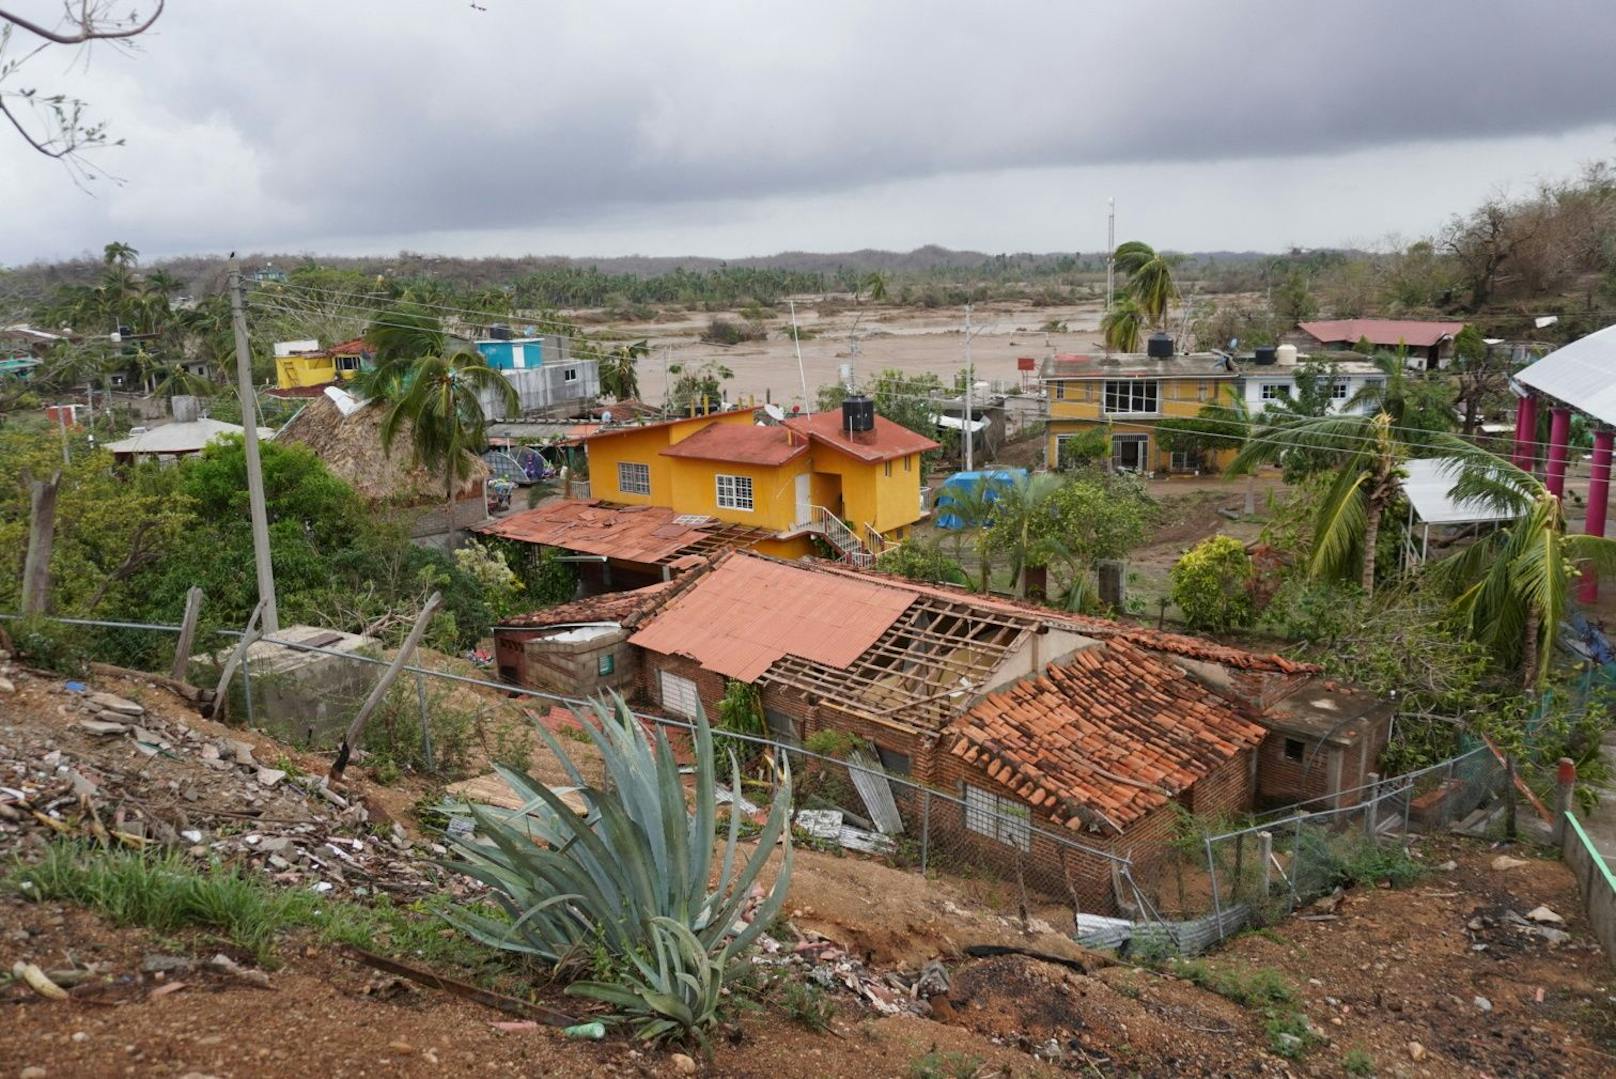 Mindestens zehn Menschen kamen nach ersten Angaben in Mexiko durch Hurrikan Agatha ums Leben. Zahlreiche werden noch vermisst.